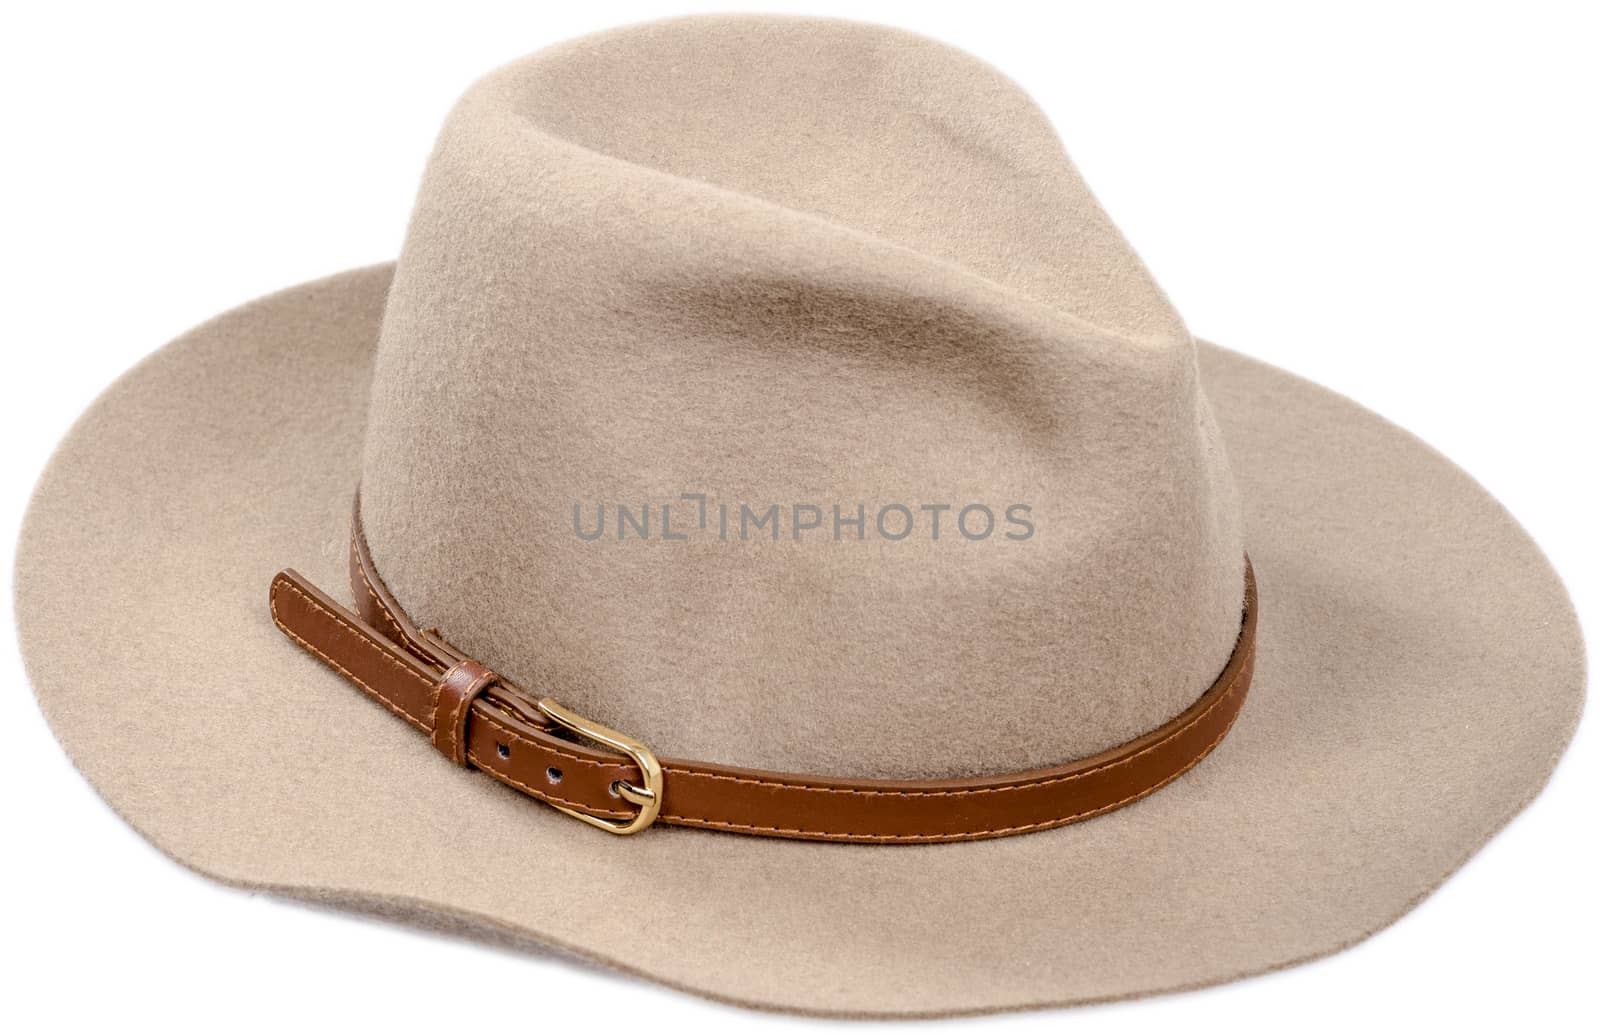 Men's felt hat on white background